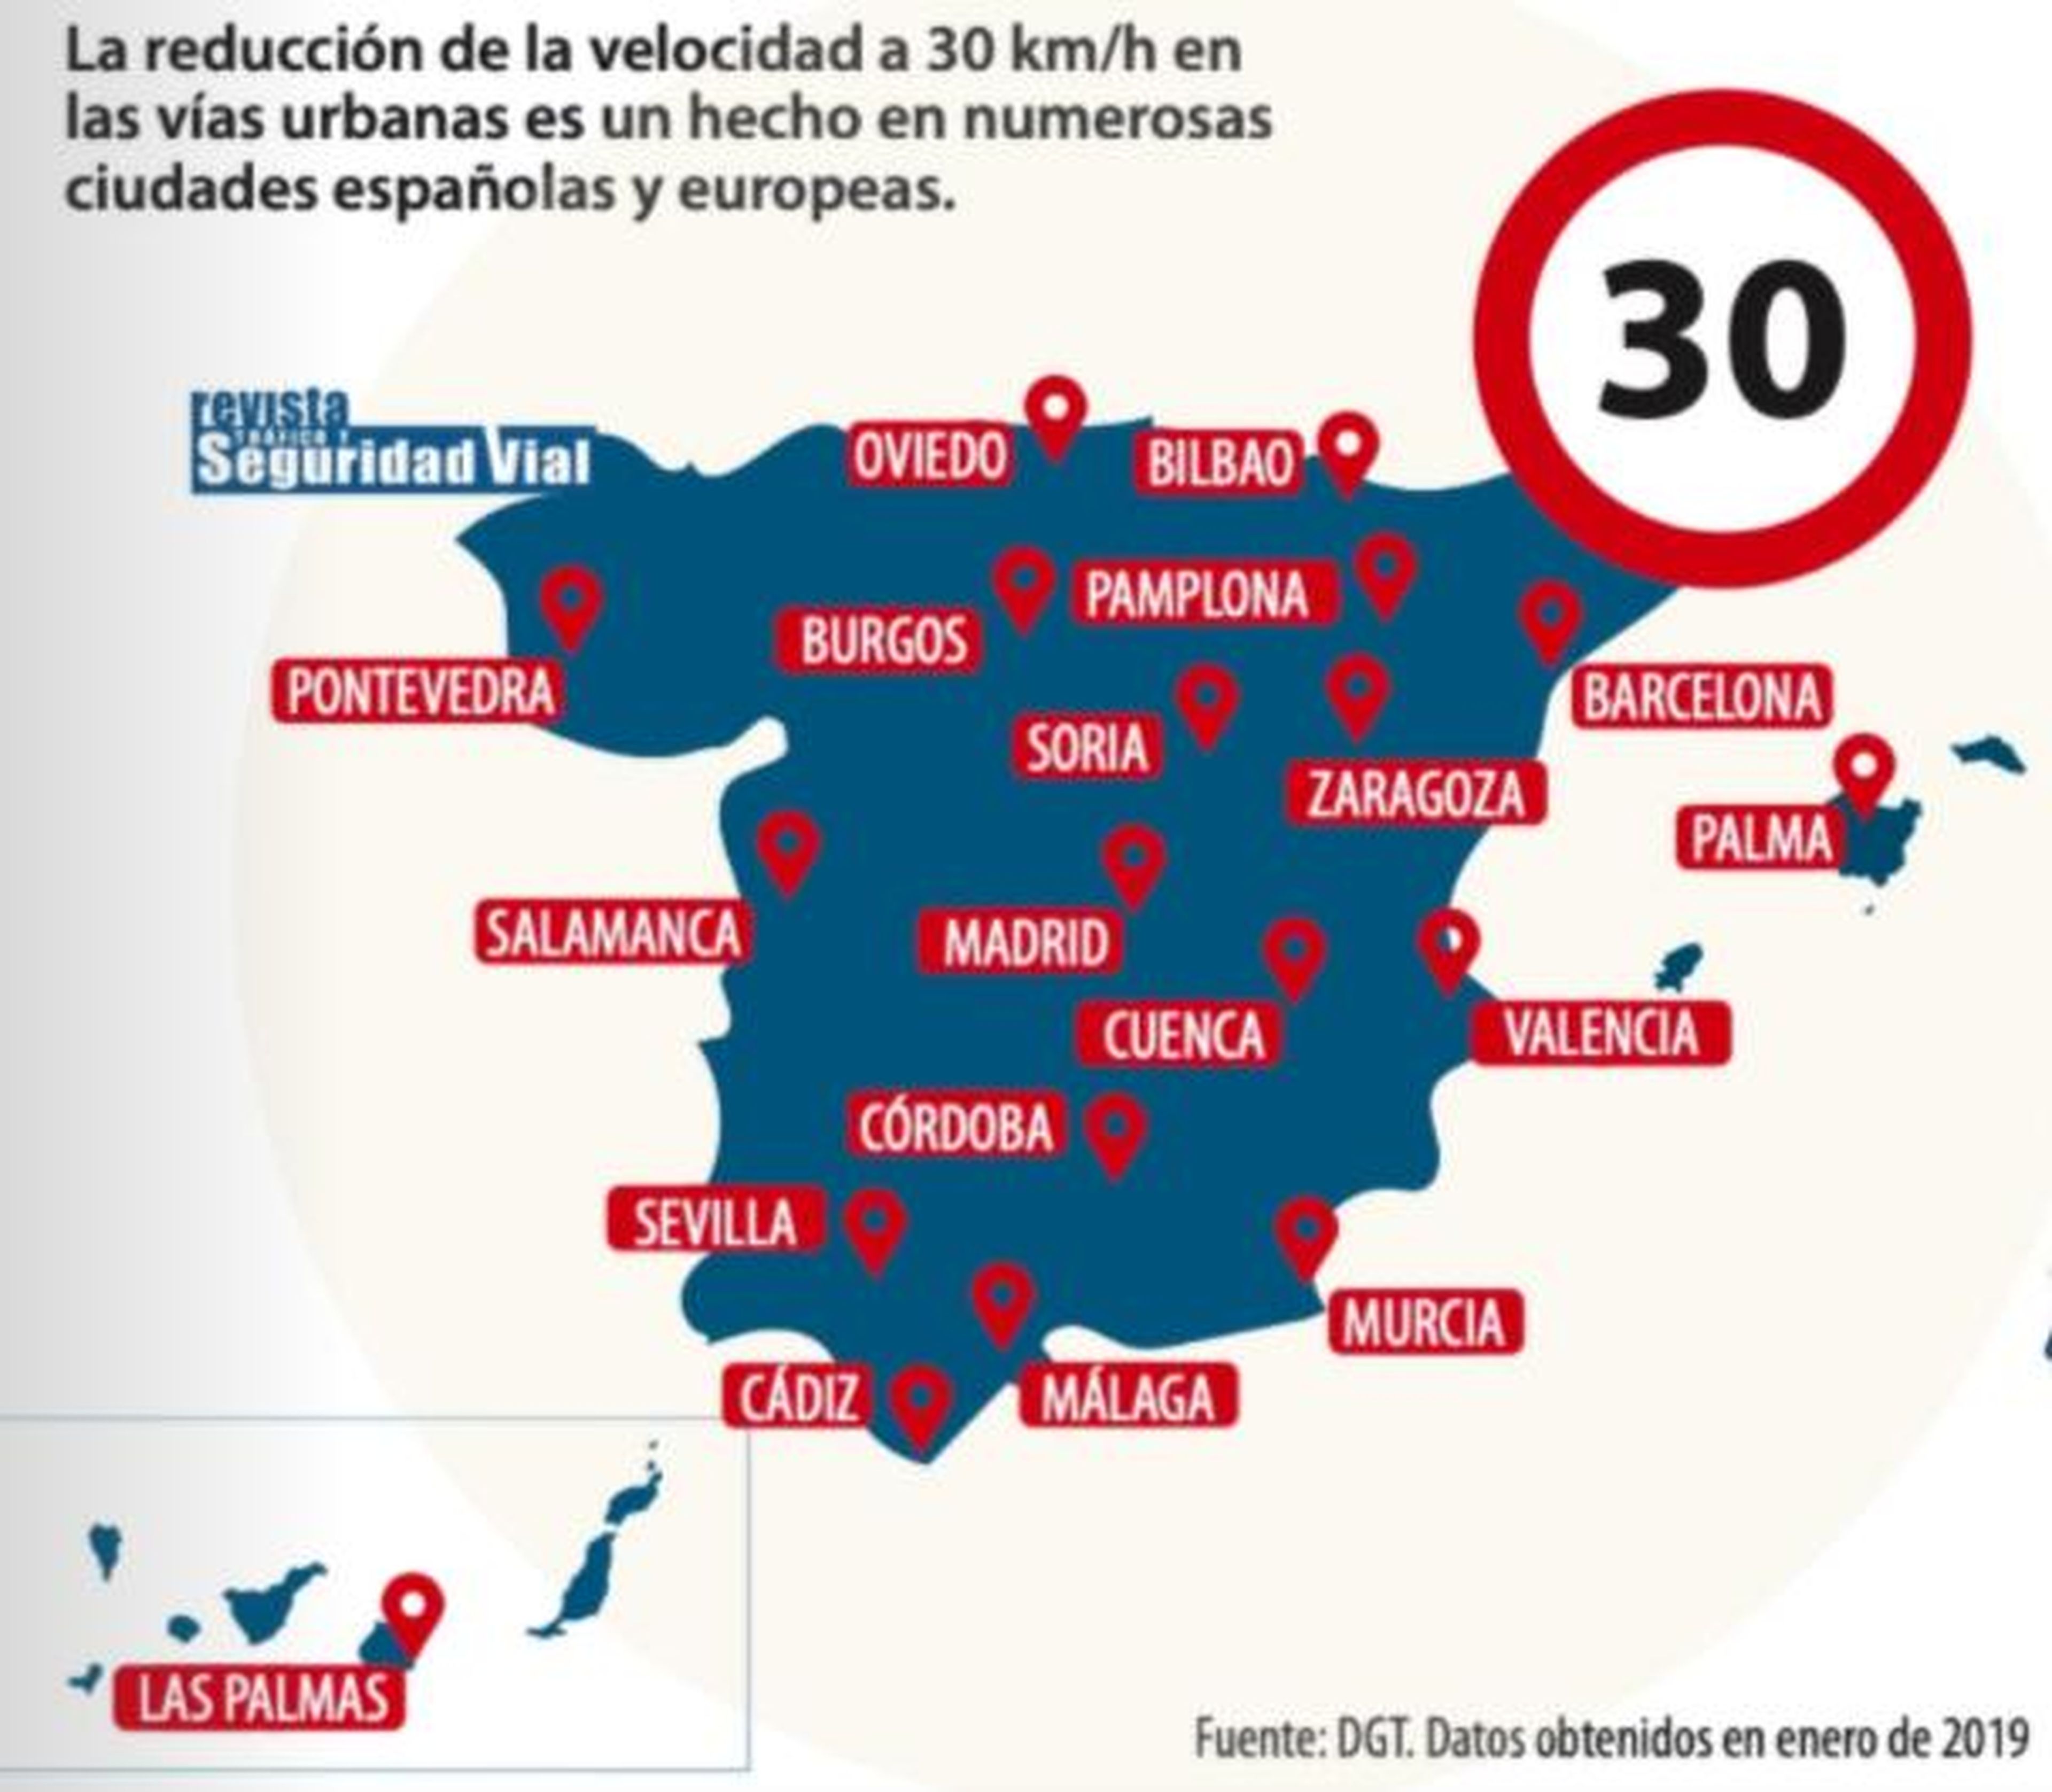 Las ciudades españolas toman la iniciativa sin esperar a la DGT y reducen su velocidad a 30 km/h